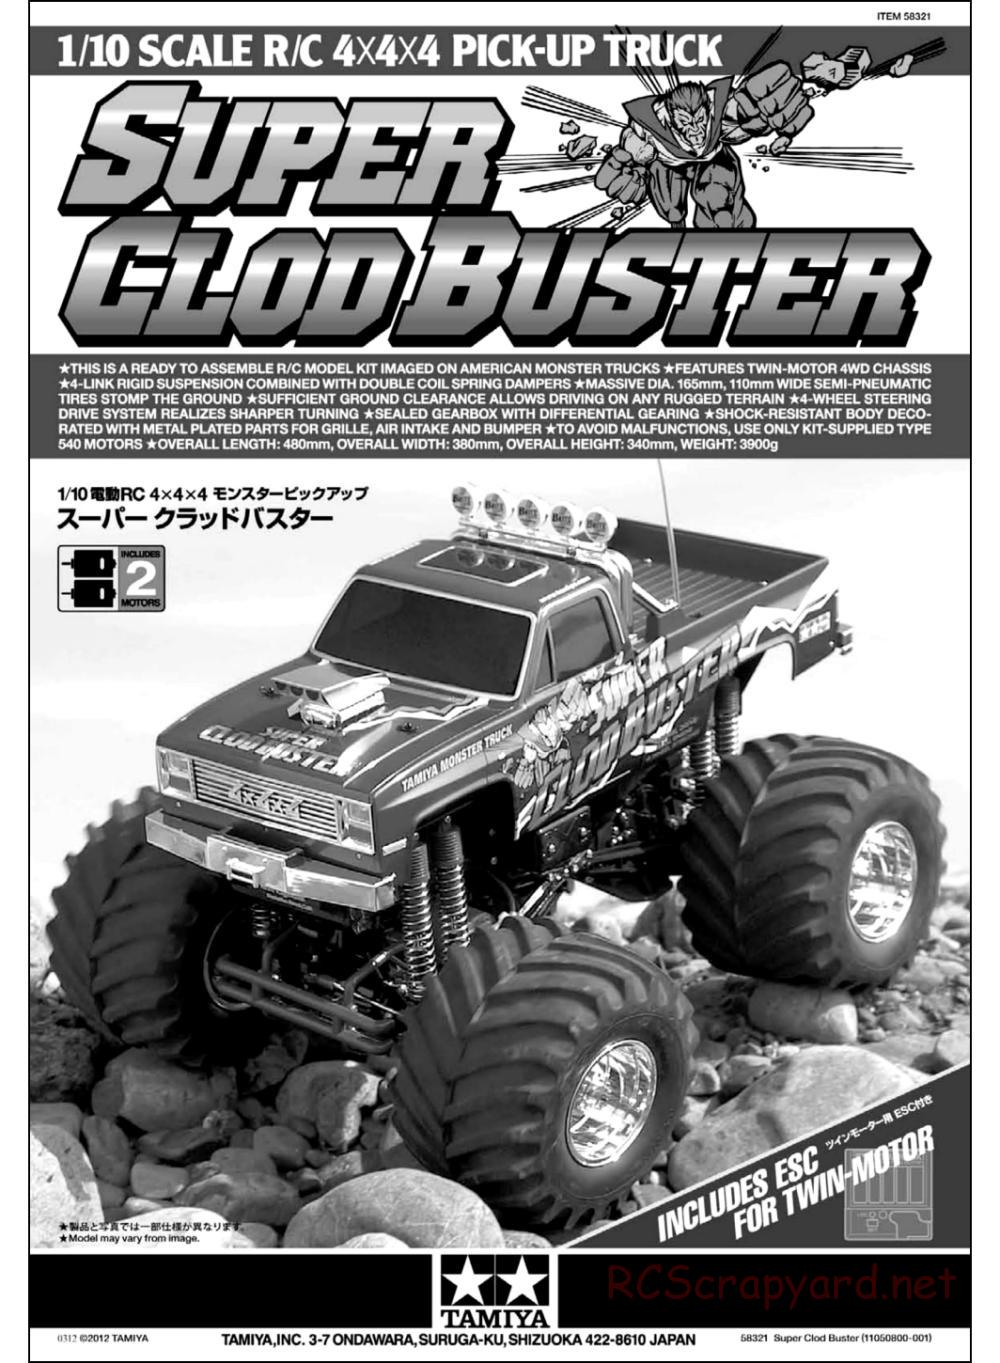 Tamiya - Super Clod Buster Chassis - Manual - Page 1